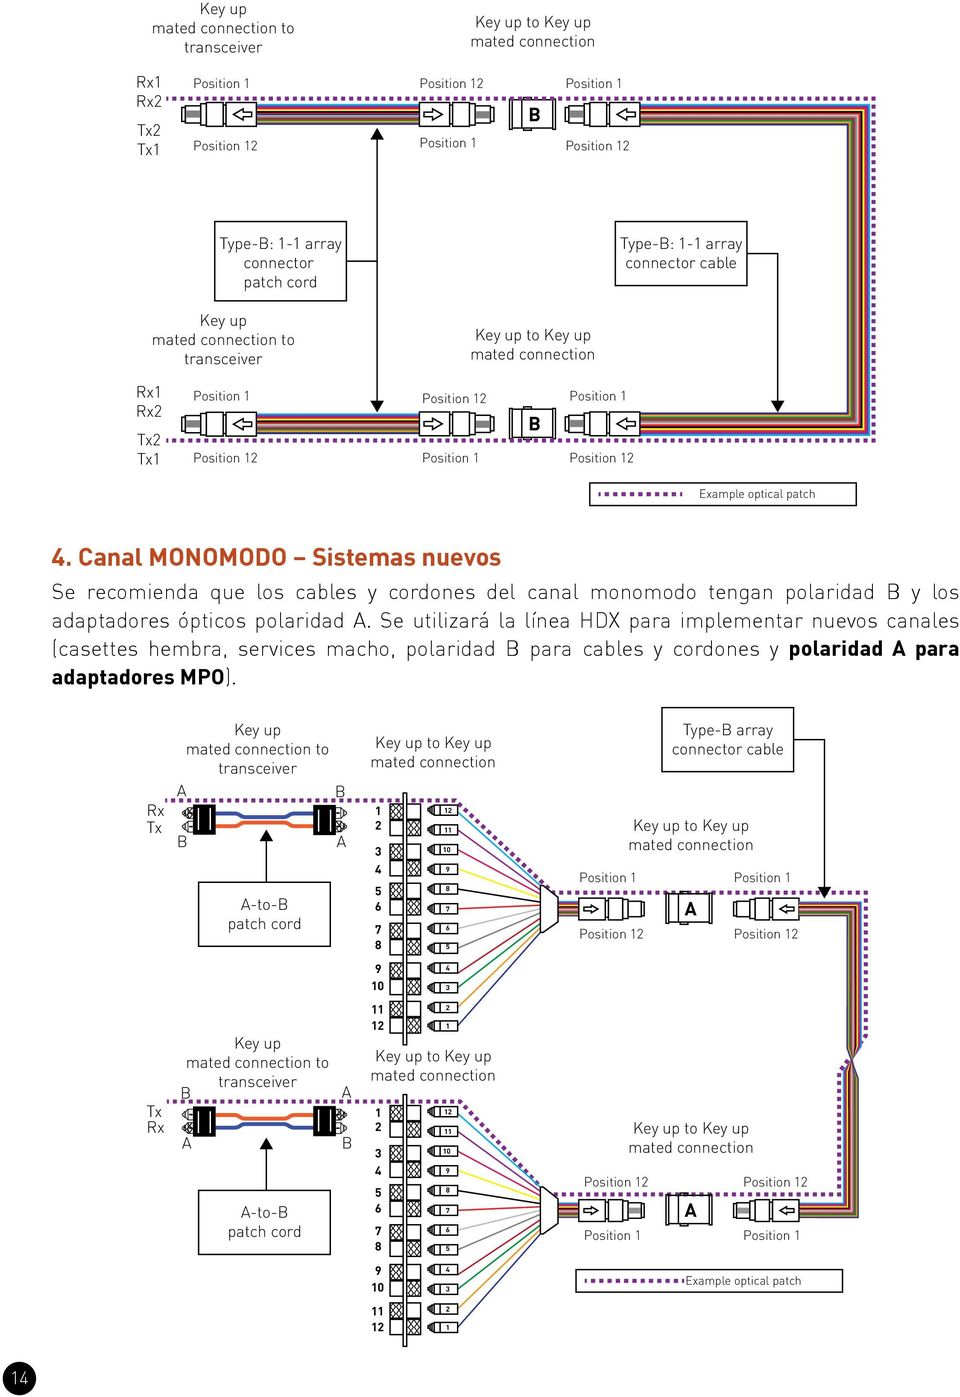 Canal MONOMODO Sistemas nuevos Se recomienda que los cables y cordones del canal monomodo tengan polaridad y los adaptadores ópticos polaridad.